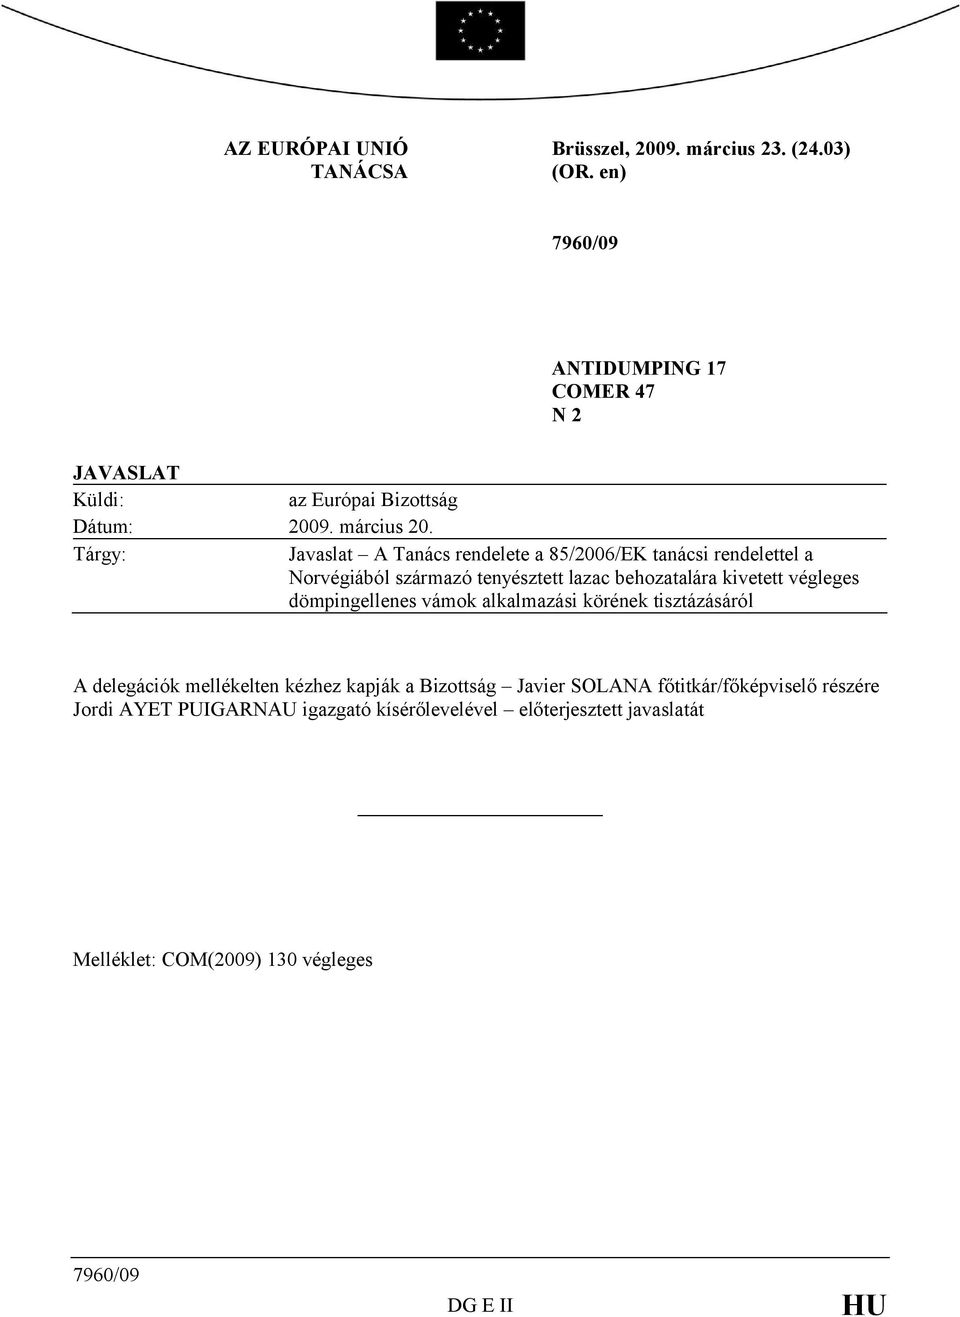 Tárgy: Javaslat A Tanács rendelete a 85/2006/EK tanácsi rendelettel a Norvégiából származó tenyésztett lazac behozatalára kivetett végleges